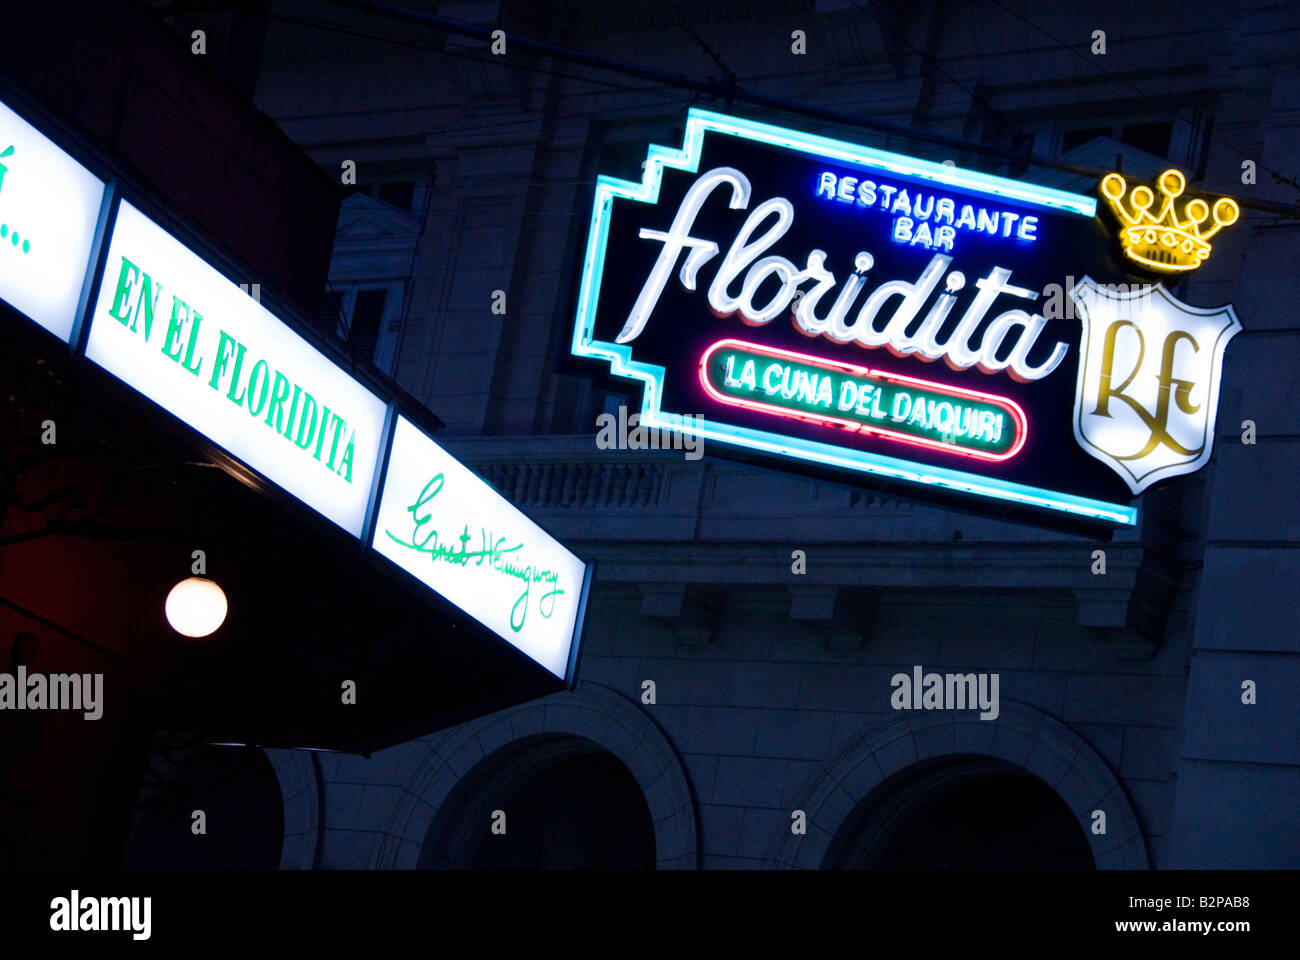 Neon sign for El Floridita bar La Habana Vieja Cuba Stock Photo